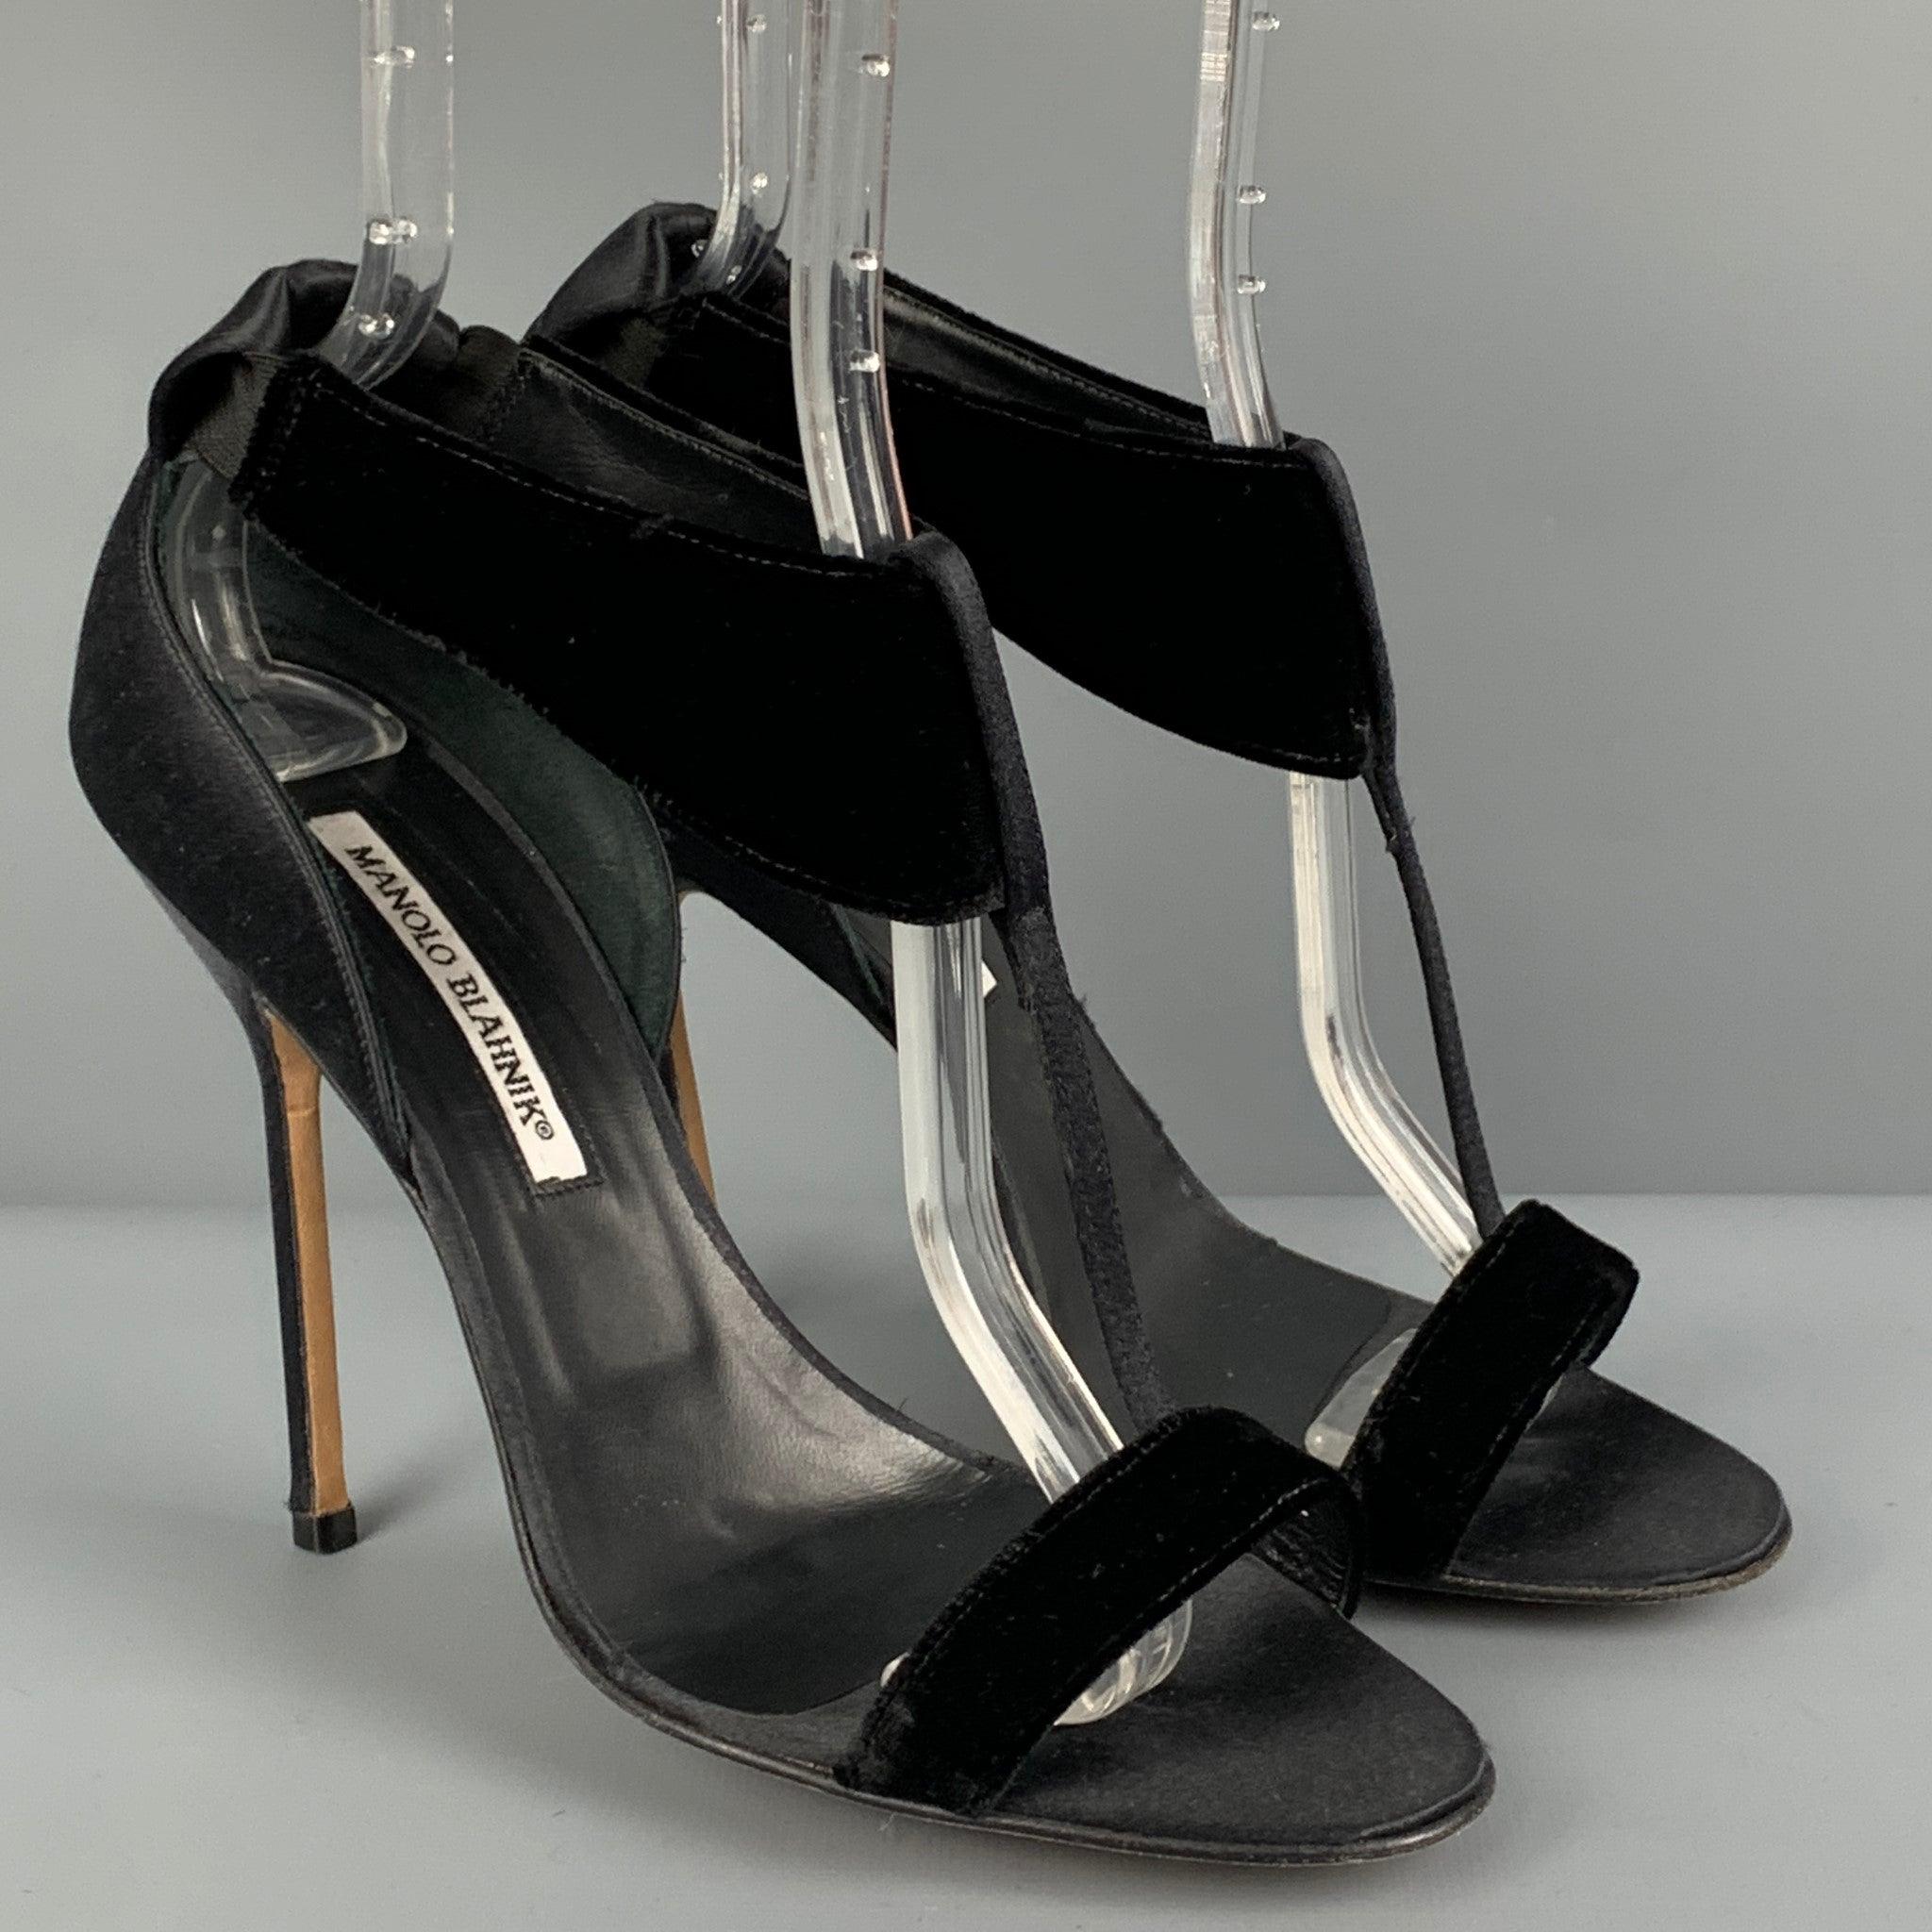 Les sandales MANOLO BLAHNIK sont réalisées en satin noir et bordées de velours. Elles sont dotées d'une bride en T, d'un bout ouvert et d'un talon aiguille. Fabriquées en Italie.
Très bien
Etat d'occasion. 

Marqué :   39 

Mesures : 
  Talon : 4.5